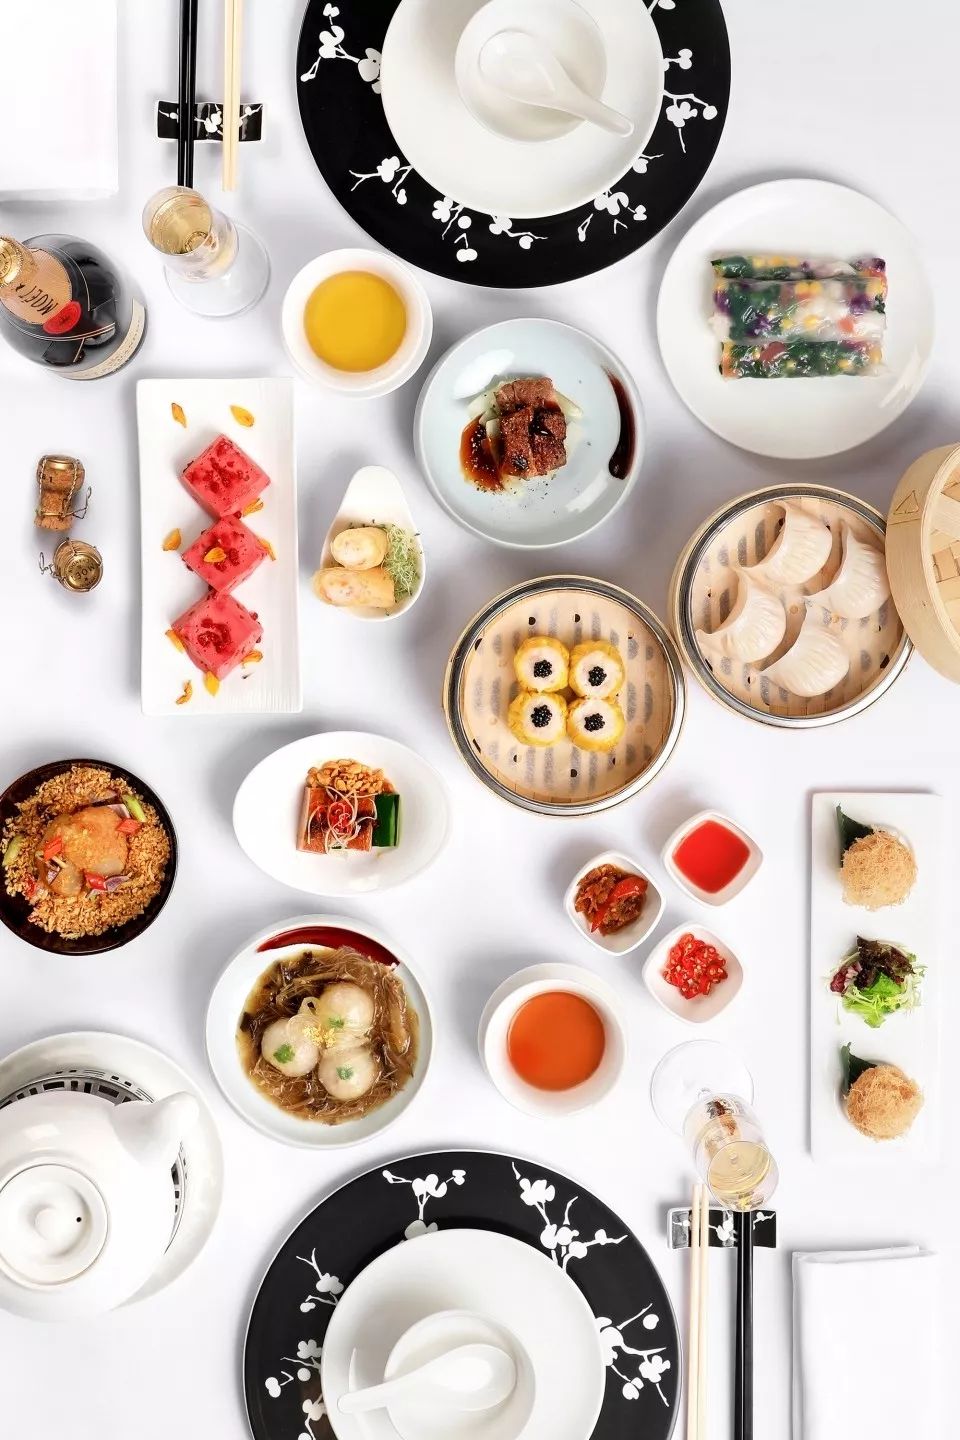 米其林说这是广州最好吃的 11 家餐厅,广州人同意吗